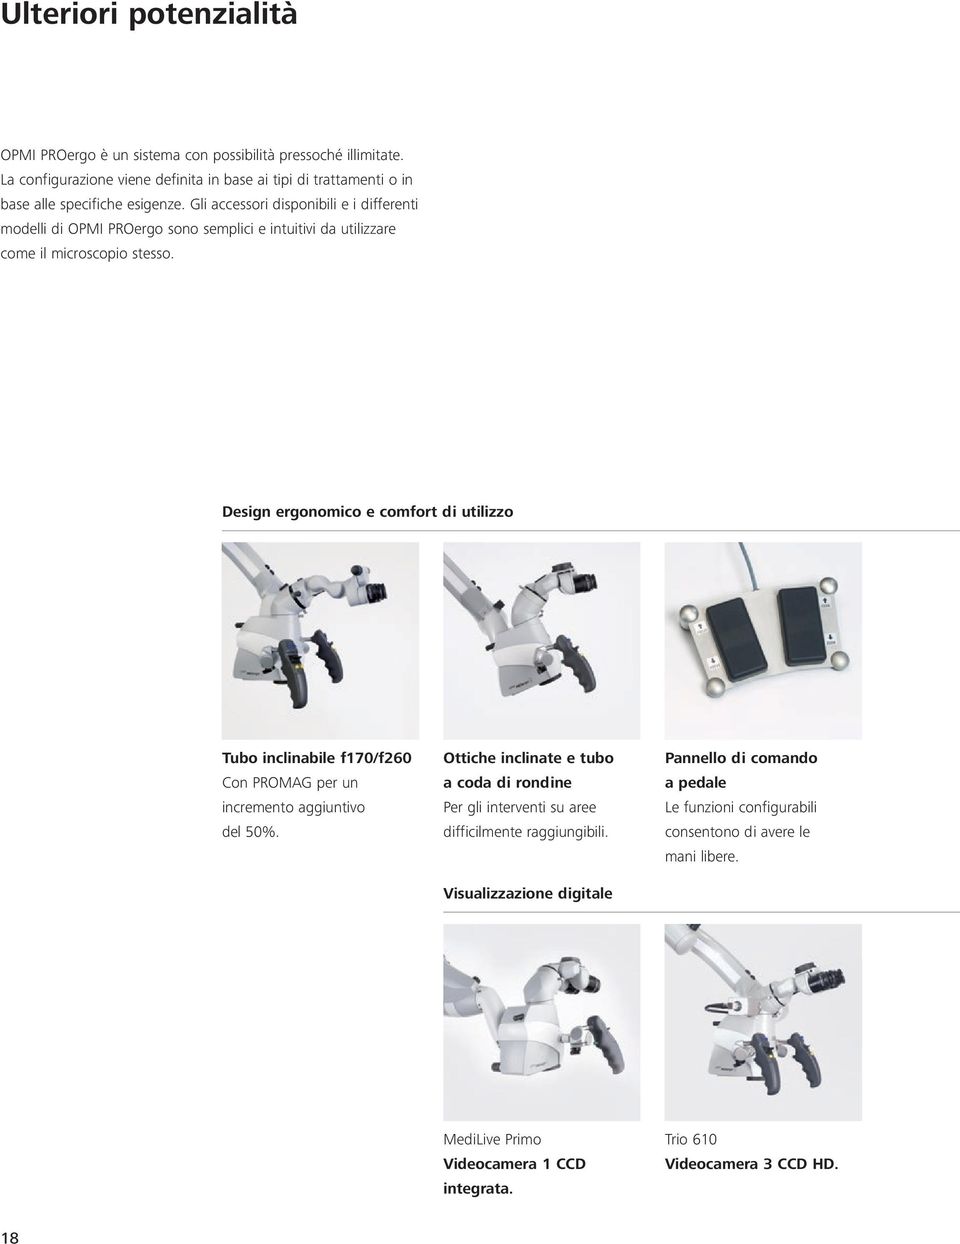 Gli accessori disponibili e i differenti modelli di OPMI PROergo sono semplici e intuitivi da utilizzare come il microscopio stesso.